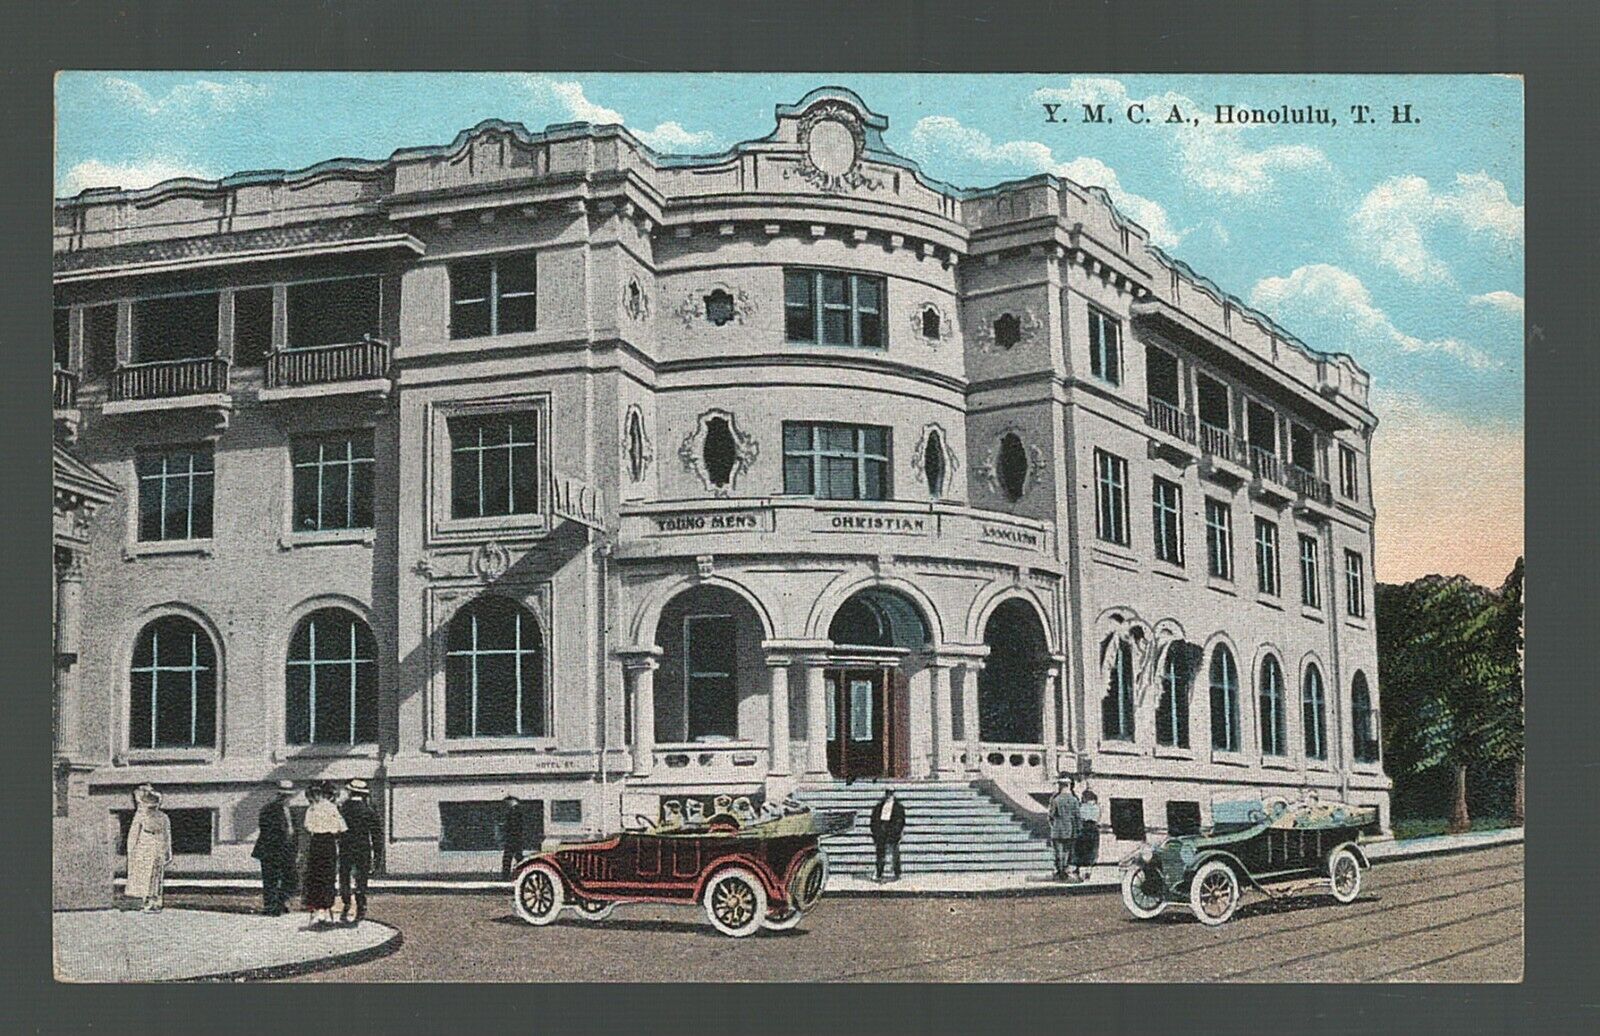 Postcard YMCA Building Honolulu Oahu Island Hawaii The Island Curio Company 1910